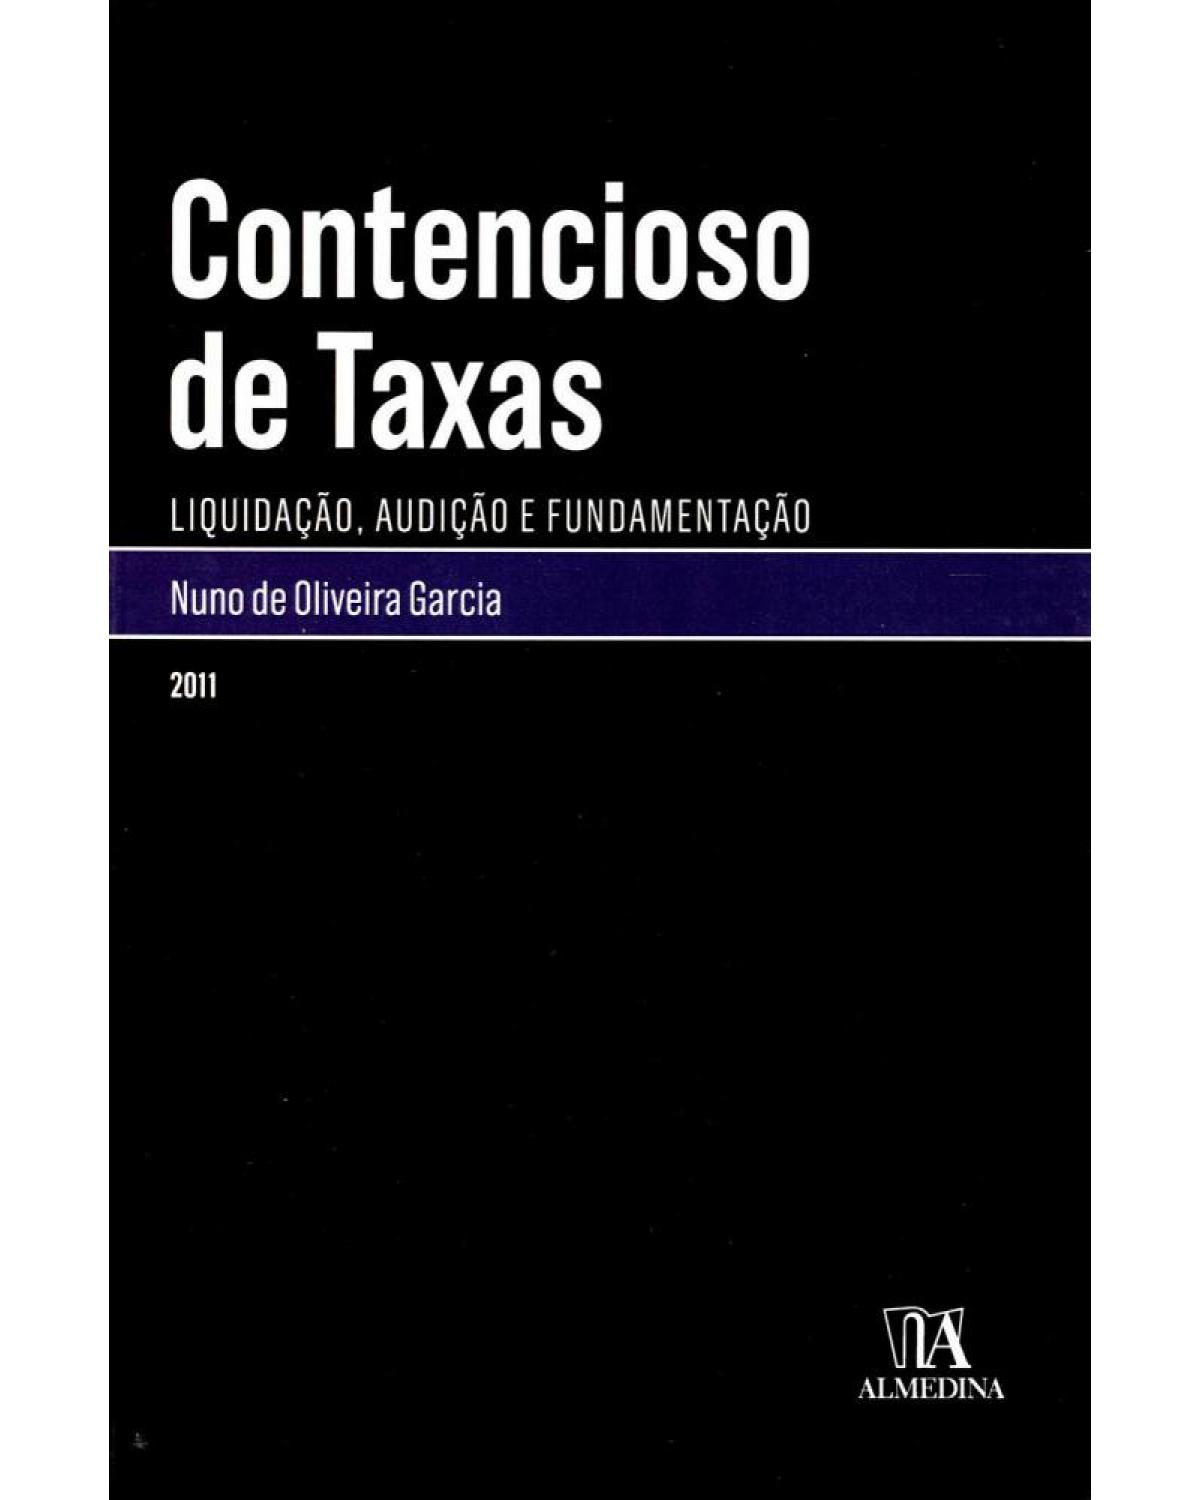 Contencioso de taxas - liquidação, audição e fundamentação - 1ª Edição | 2011